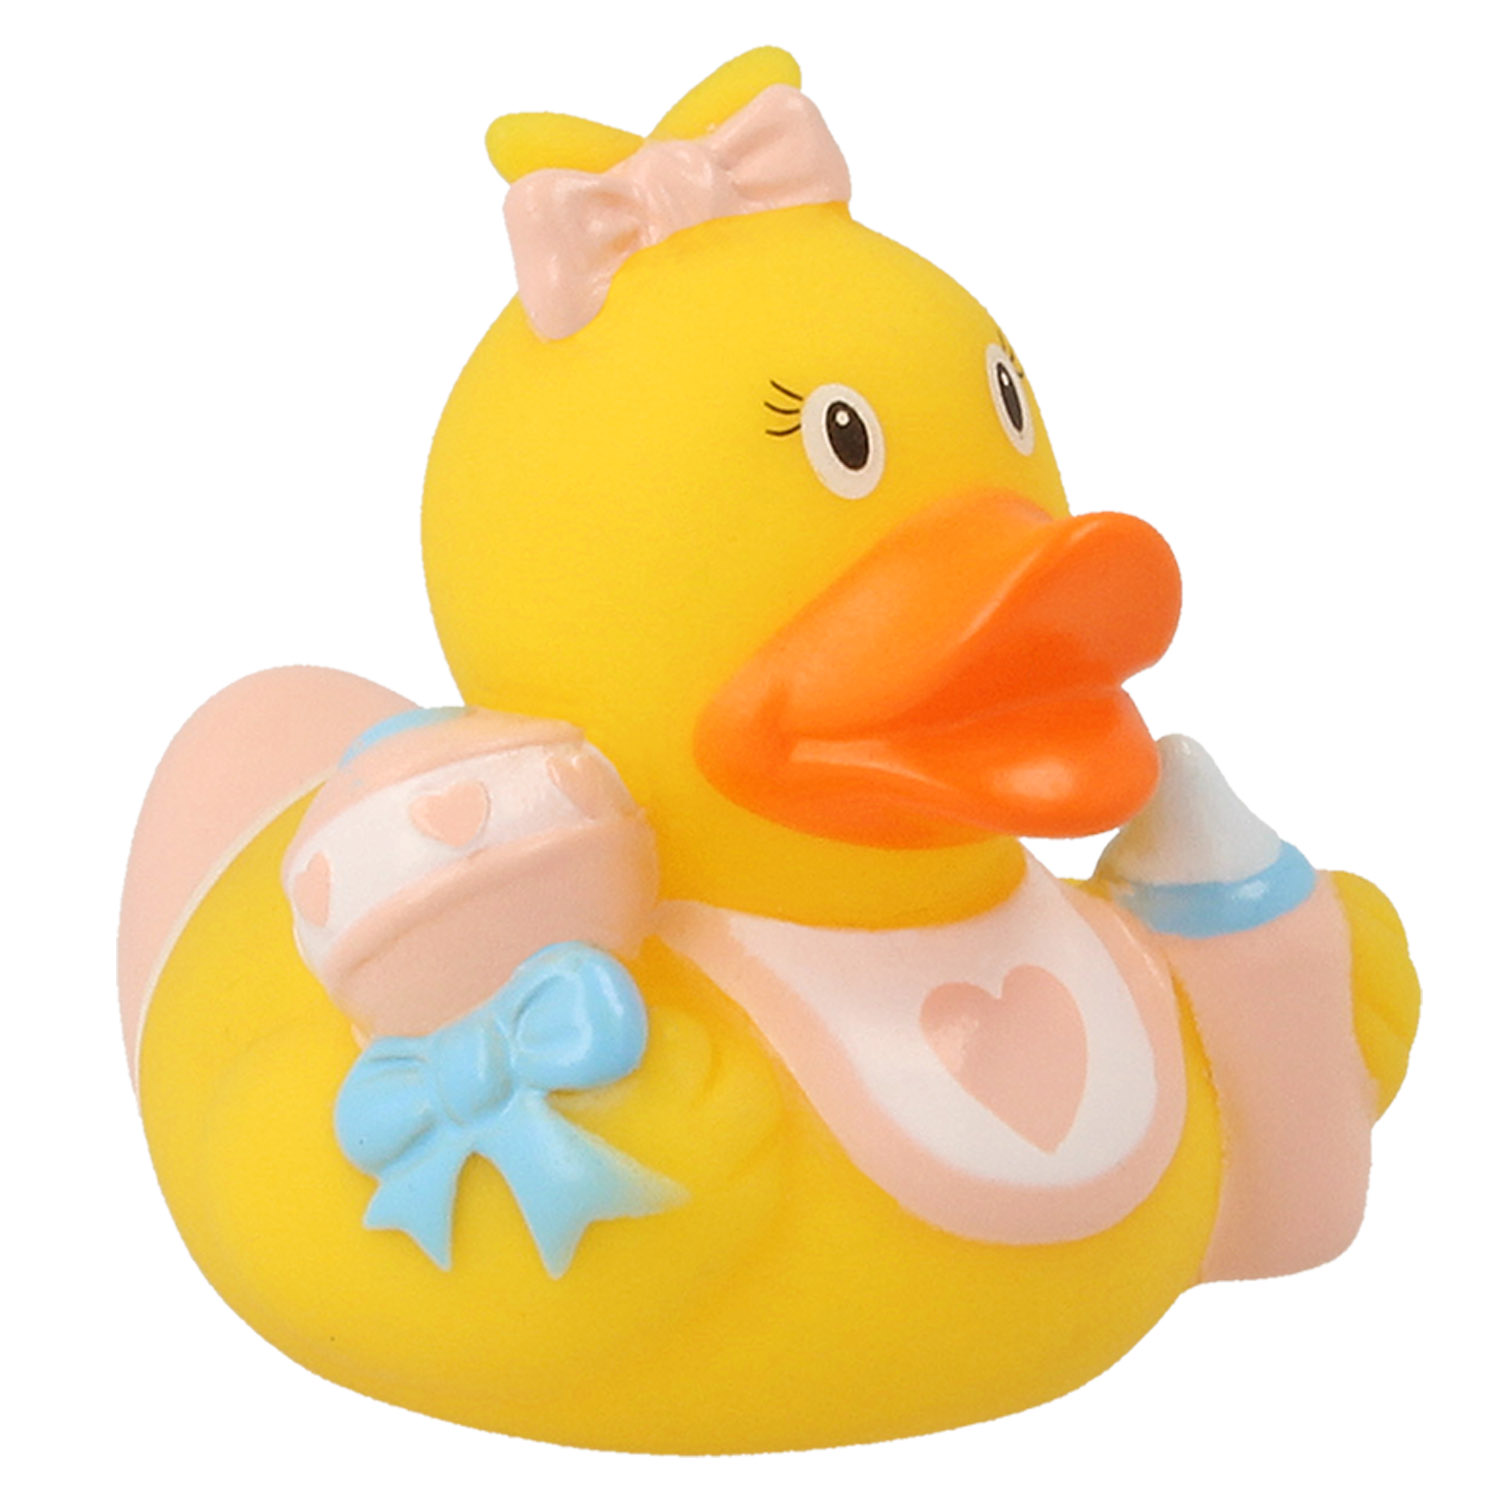 Игрушка Funny ducks для ванной Ребенок девочка уточка 1848 - фото 4